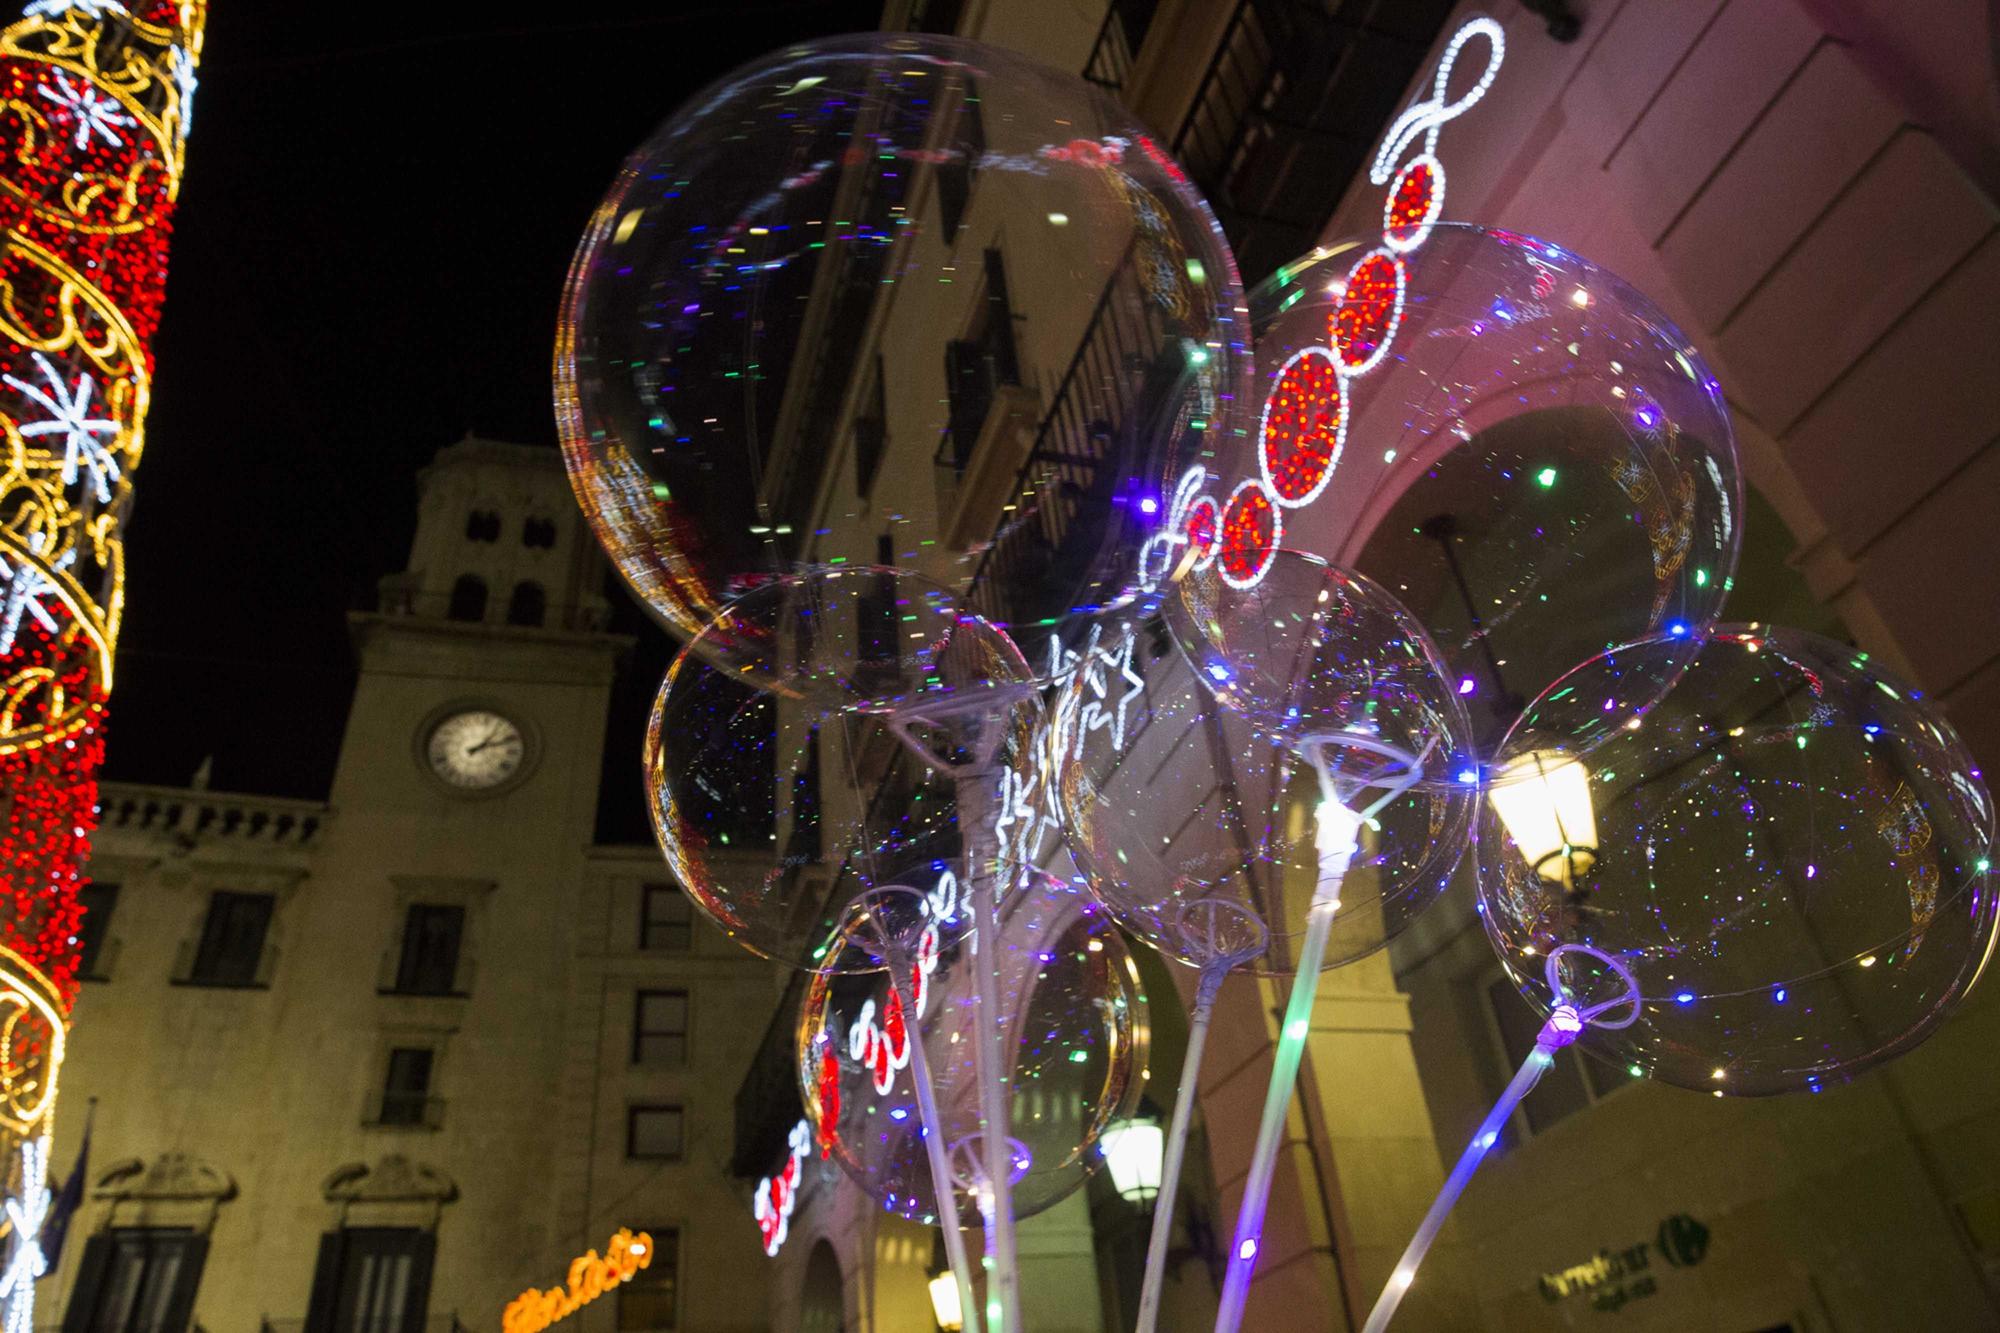 Así se disfruta la Nochevieja en la Plaza del Ayuntamiento de Alicante